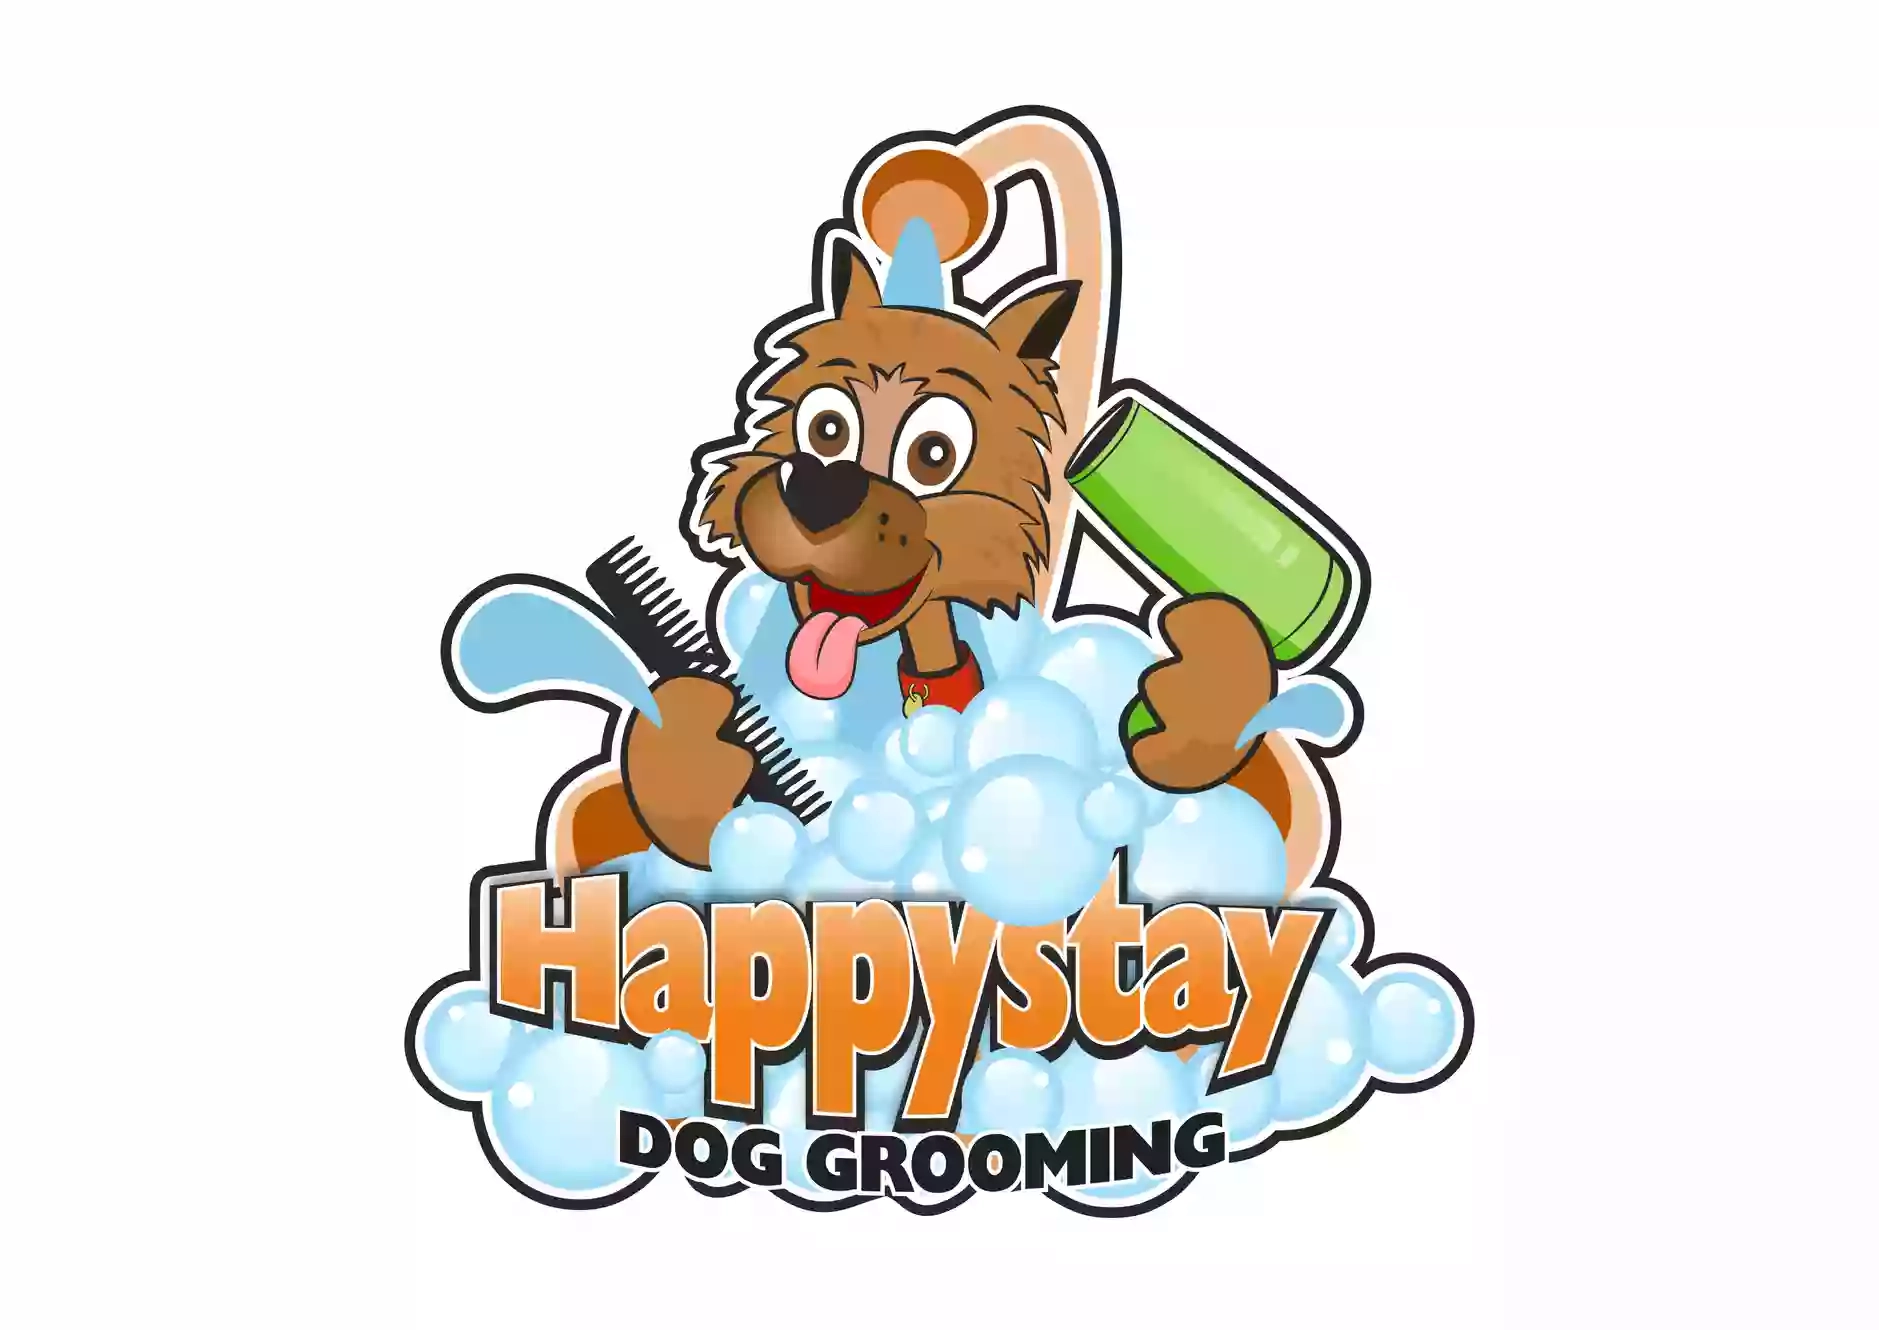 Happystay Dog Grooming